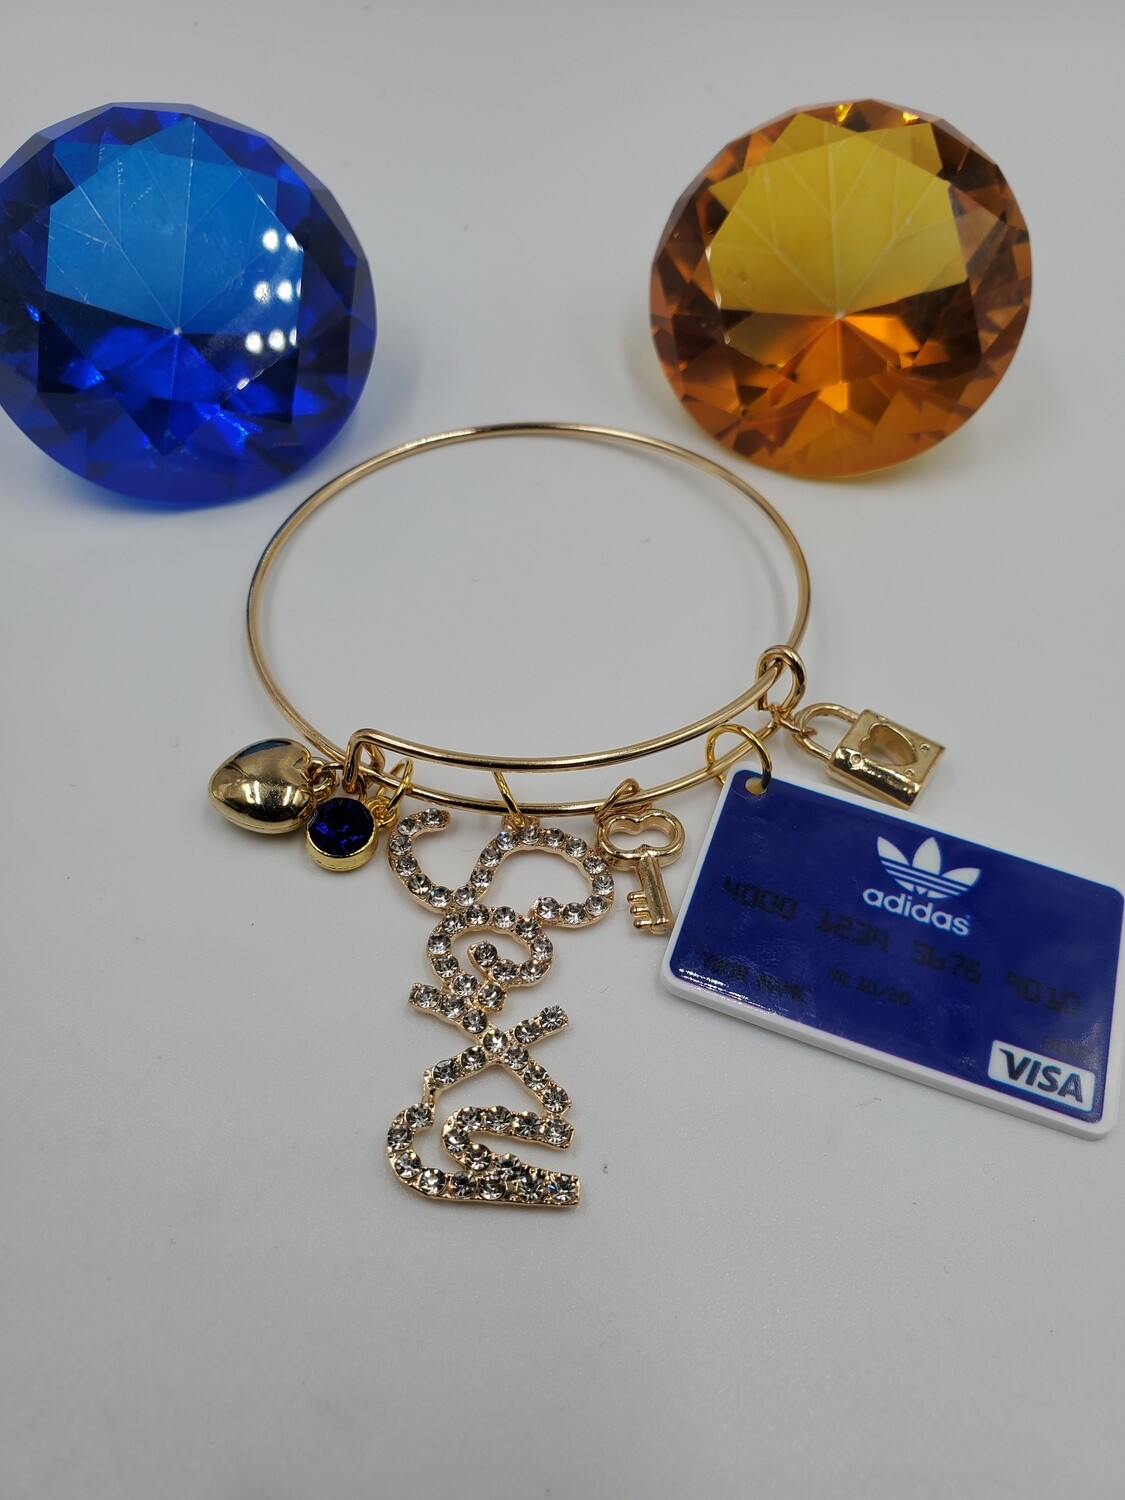 Credit Card (Blue)Bracelet